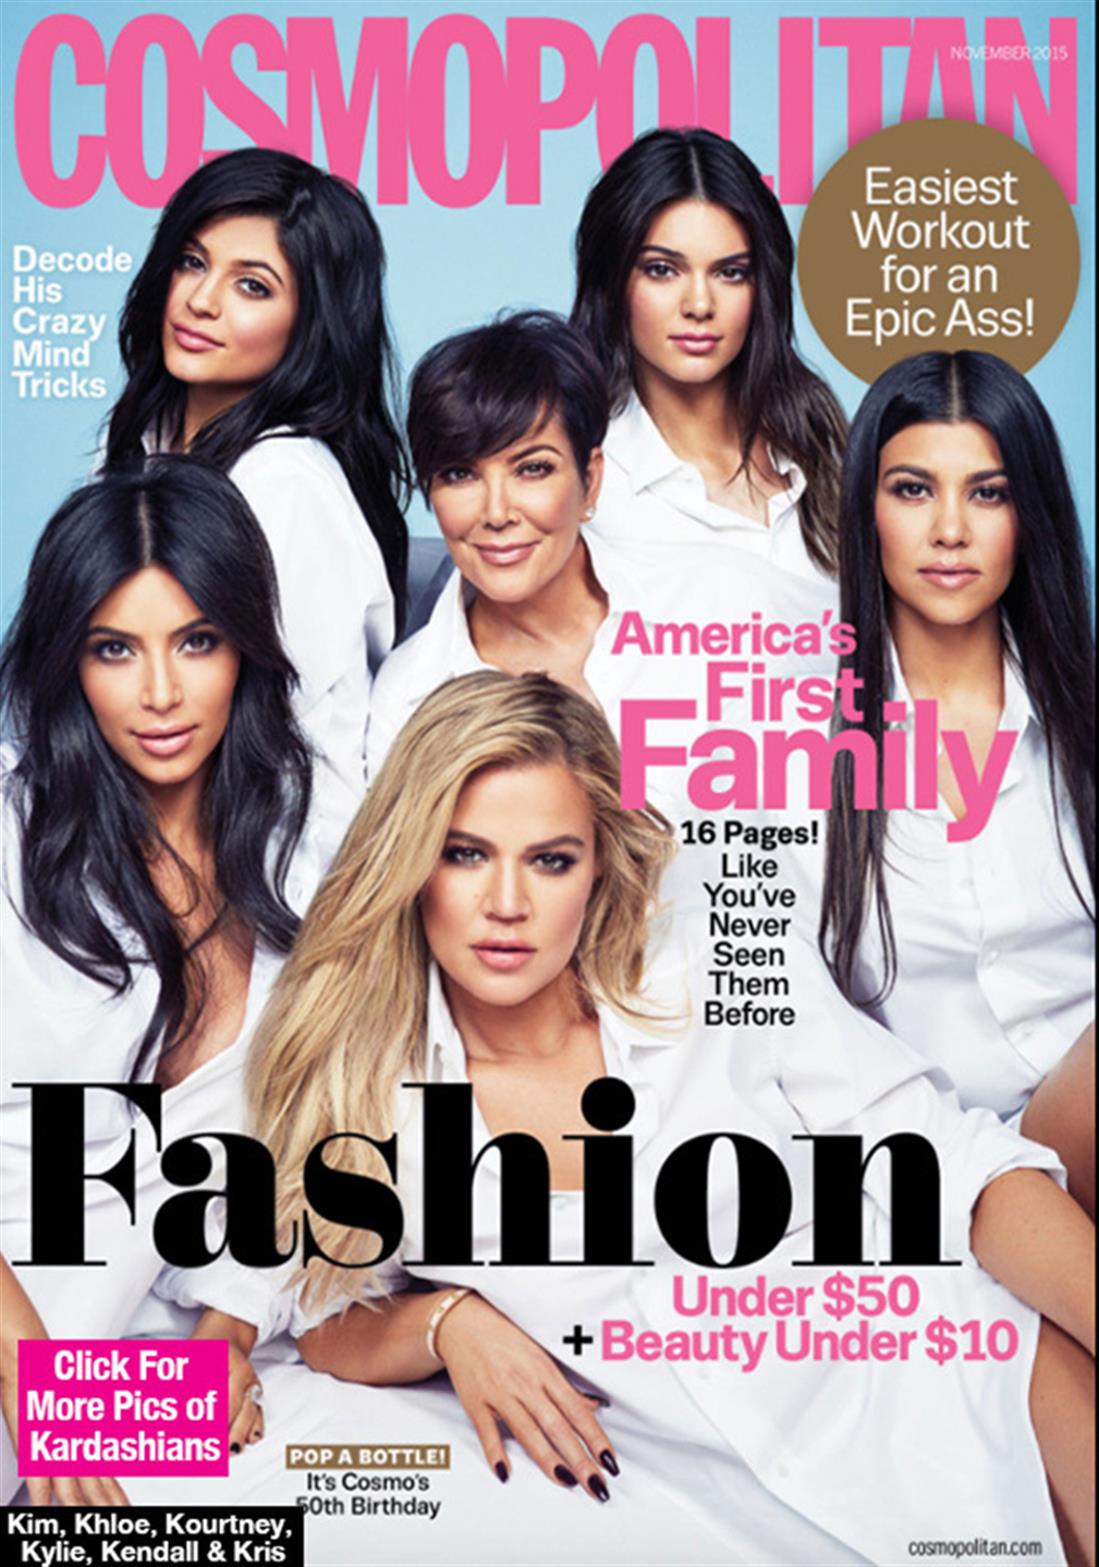 Kardashians - Jenners - Cosmopolitan